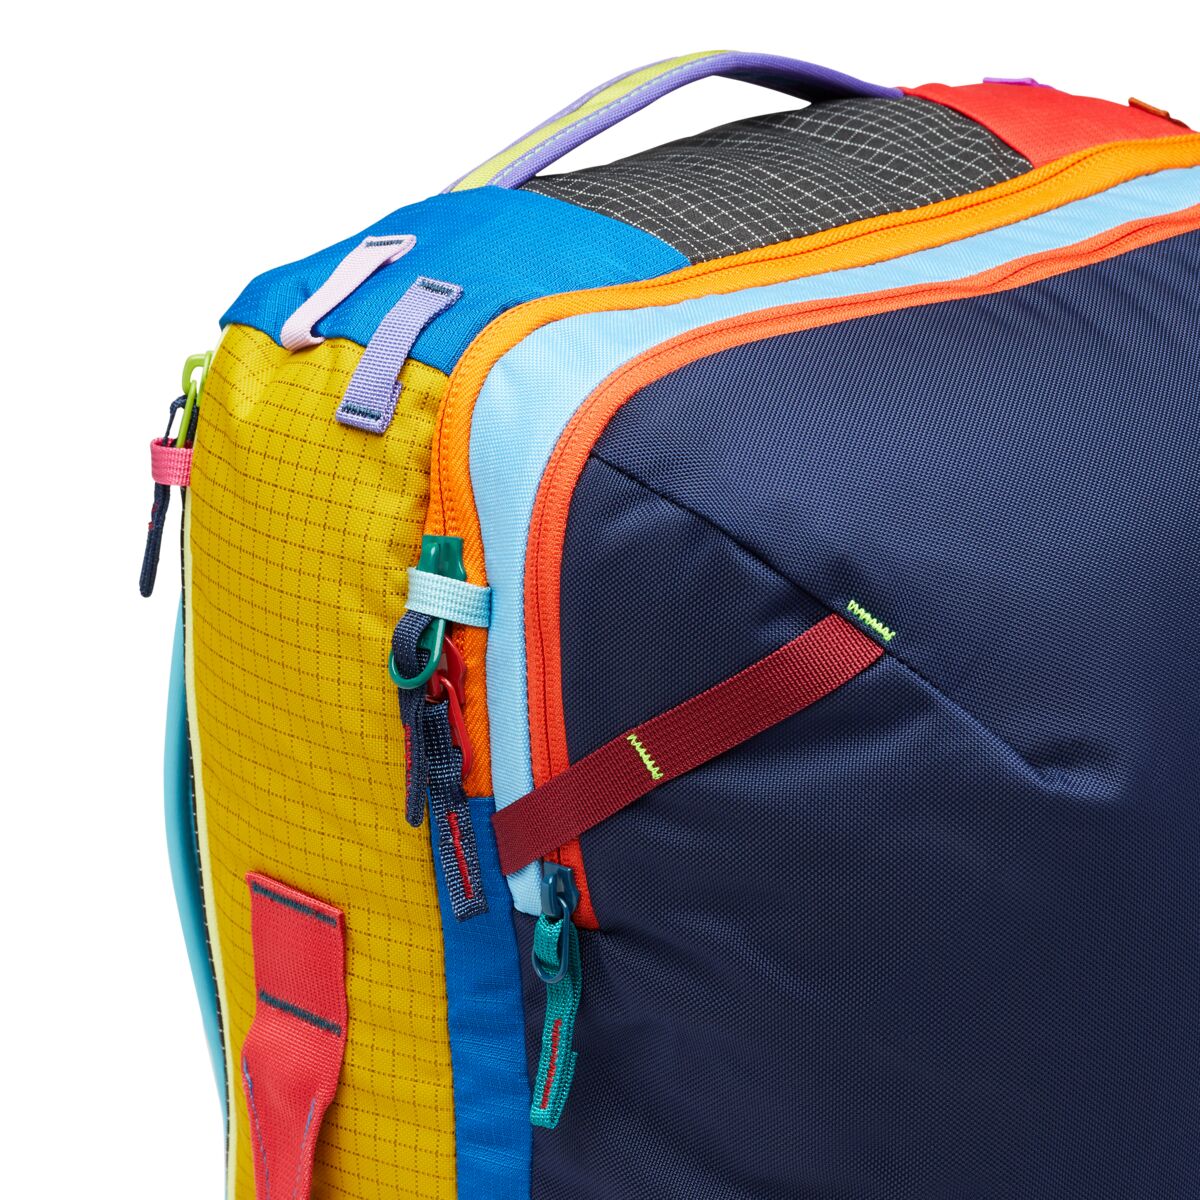 Backpack Bag Cotopaxi Allpa 35 L Dia.